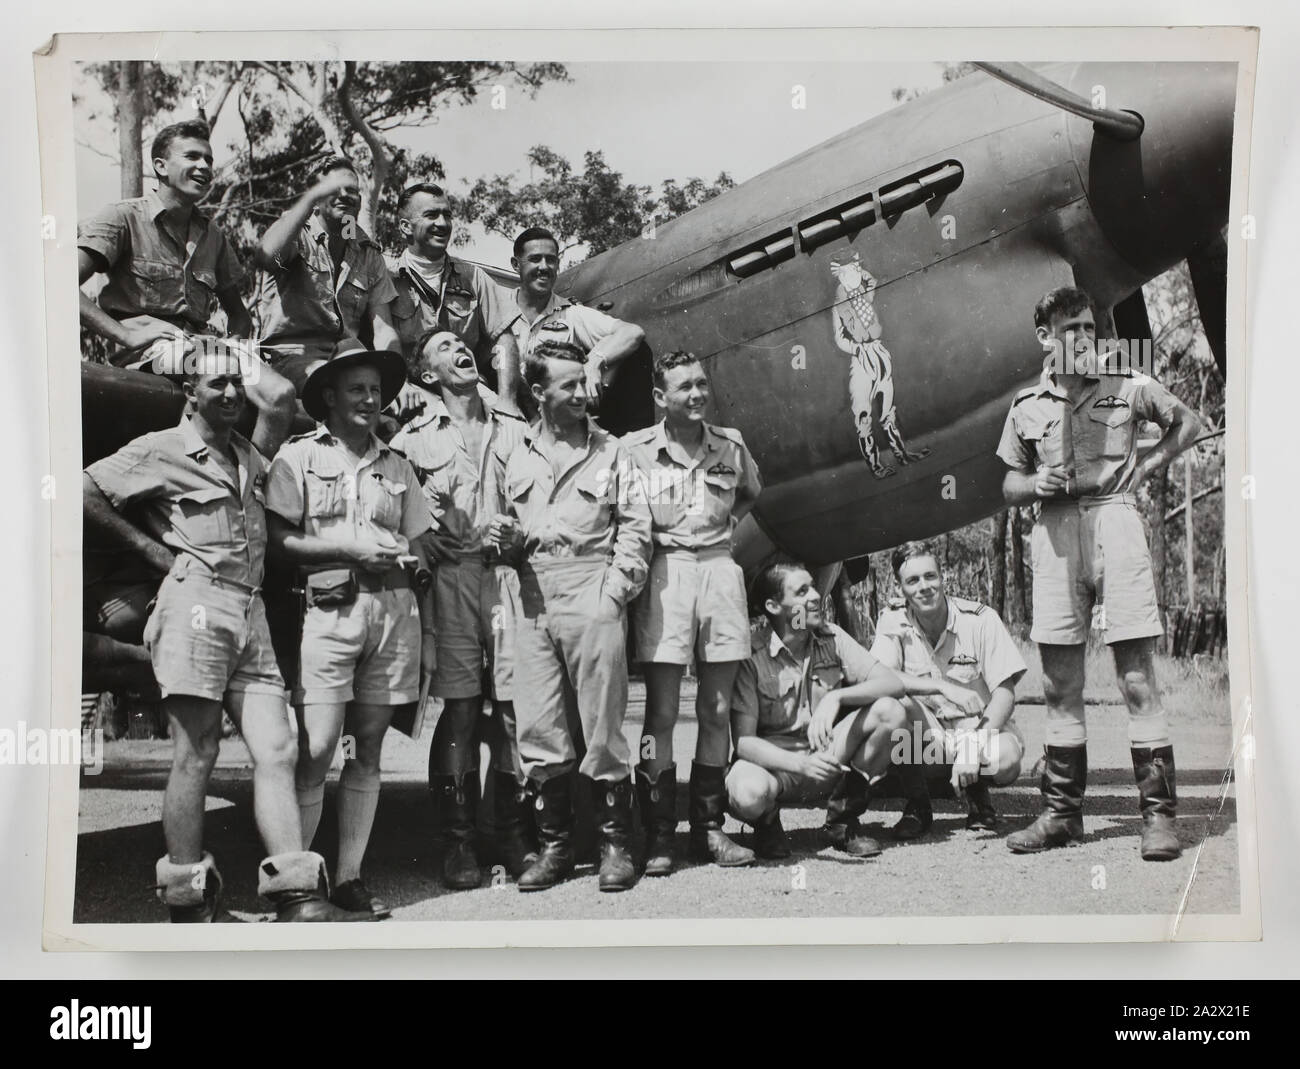 Fotografie - eine "Gruppe von Fliegern", 1941-1945, schwarz-weiß Foto einer Gruppe von Fliegern um ein Flugzeug darstellt. Einer der 116 Fotos in einem Fotoalbum von Pilot Officer Colin Keon-Cohen. Dies sind sehr gute Bilder des Lebens in Singapur mit 205 Sqn RAF, dann 77 Sqn RAAF, dem Zweiten Weltkrieg Stockfoto